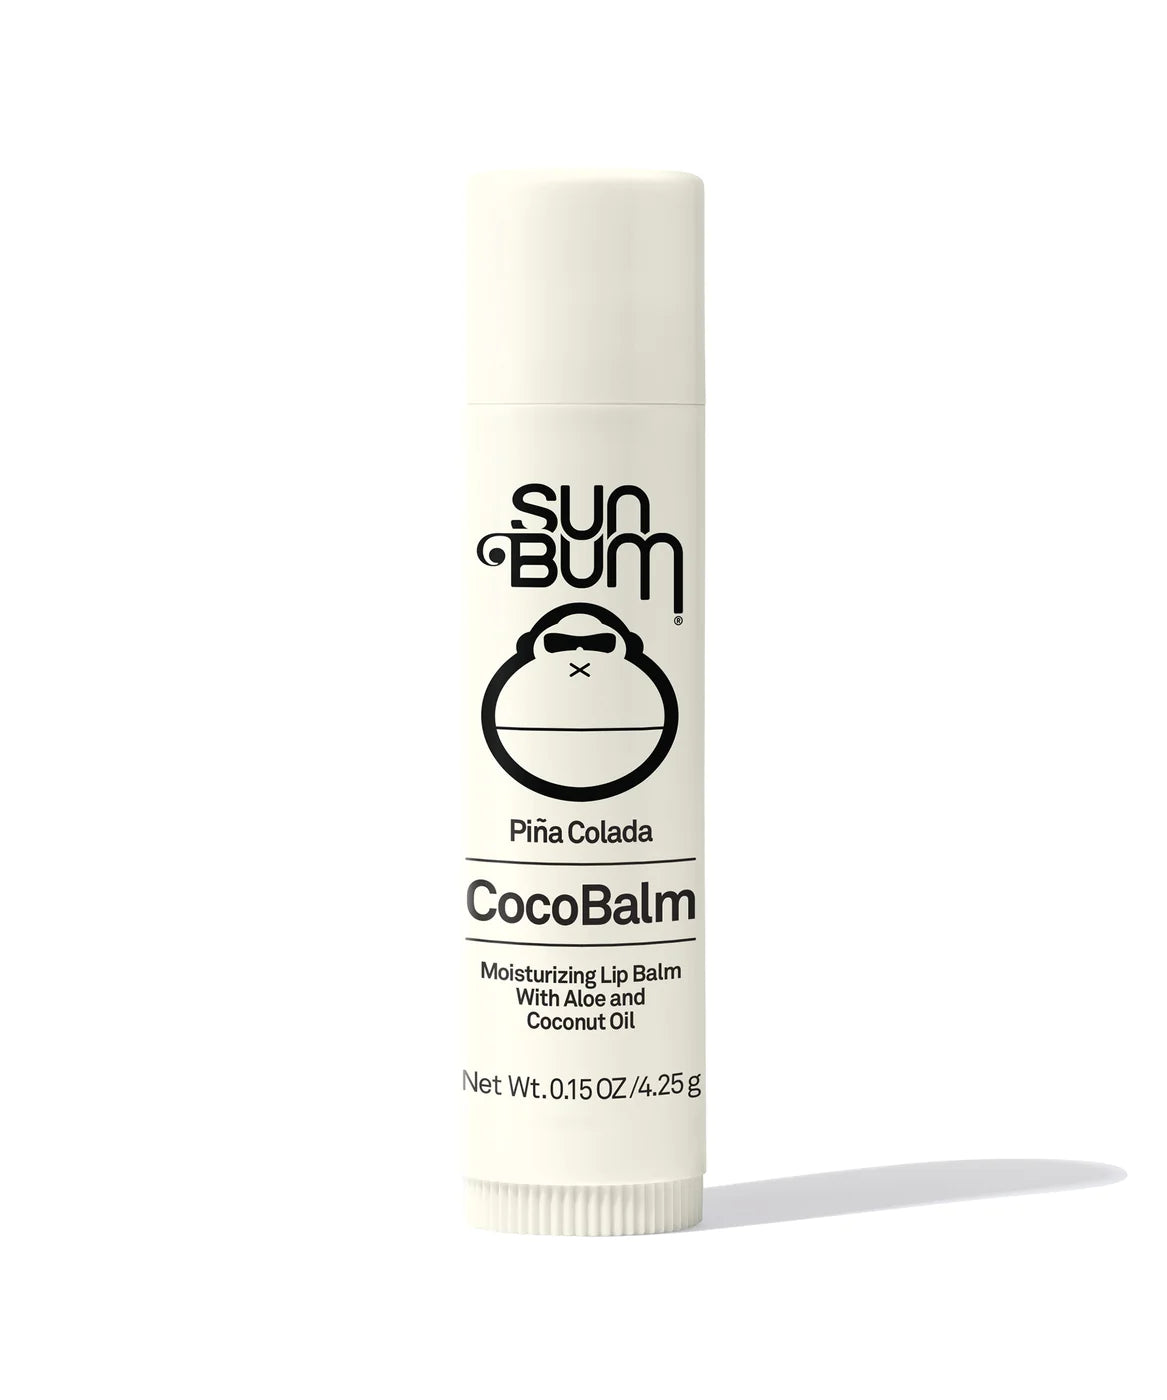 Sunbum - CocoBalm Lip Balm - Piña Colada